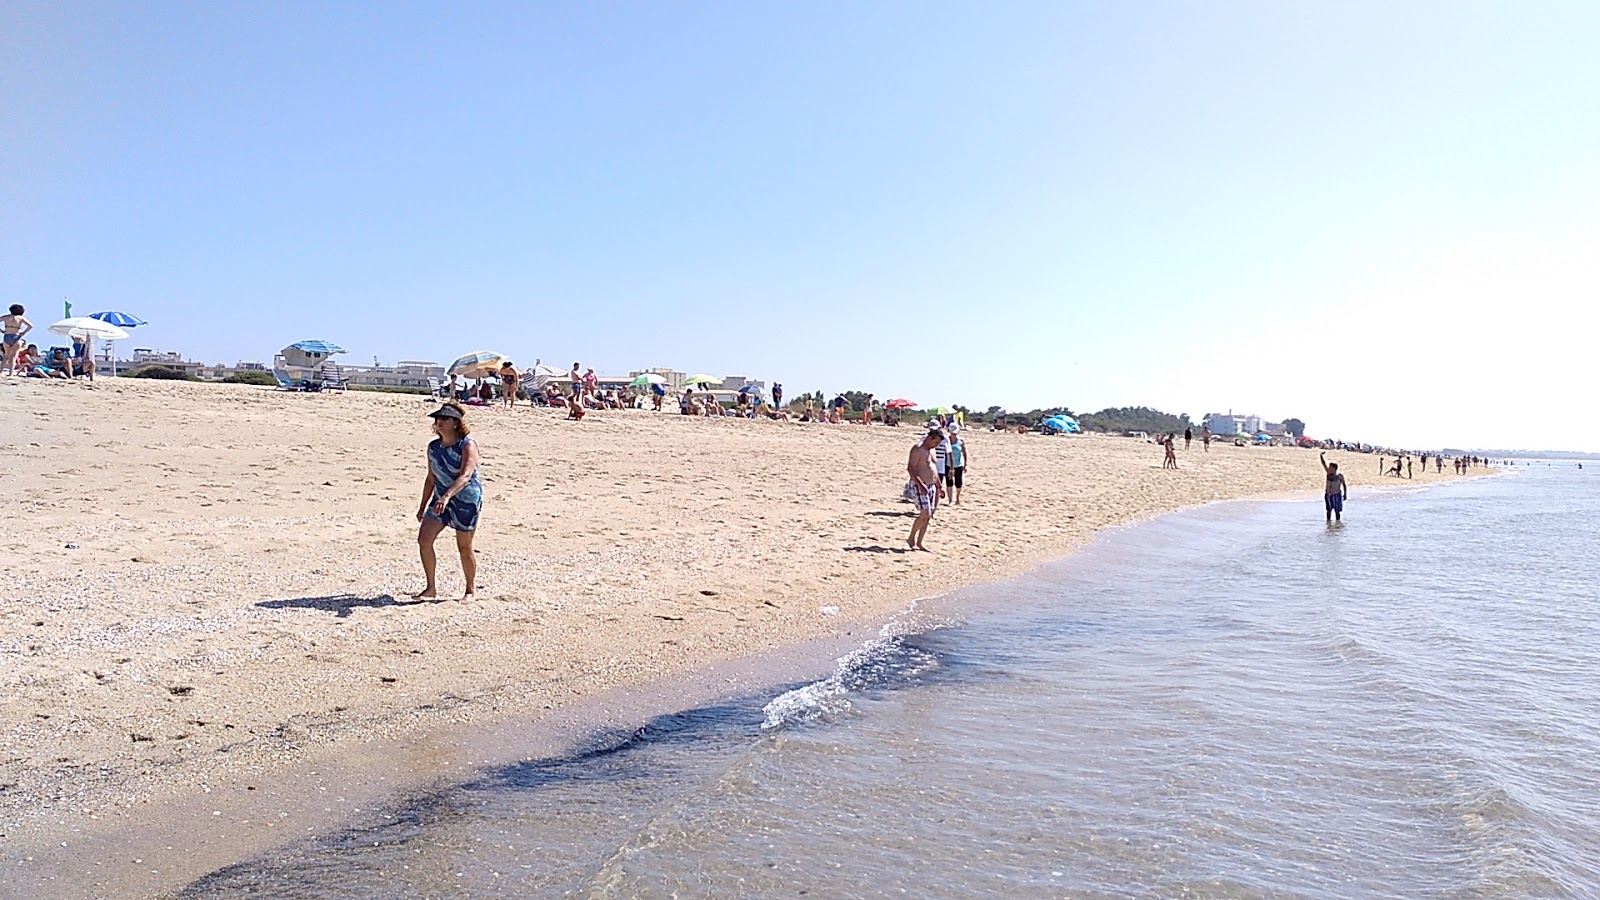 Playa de la Gaviota'in fotoğrafı geniş plaj ile birlikte